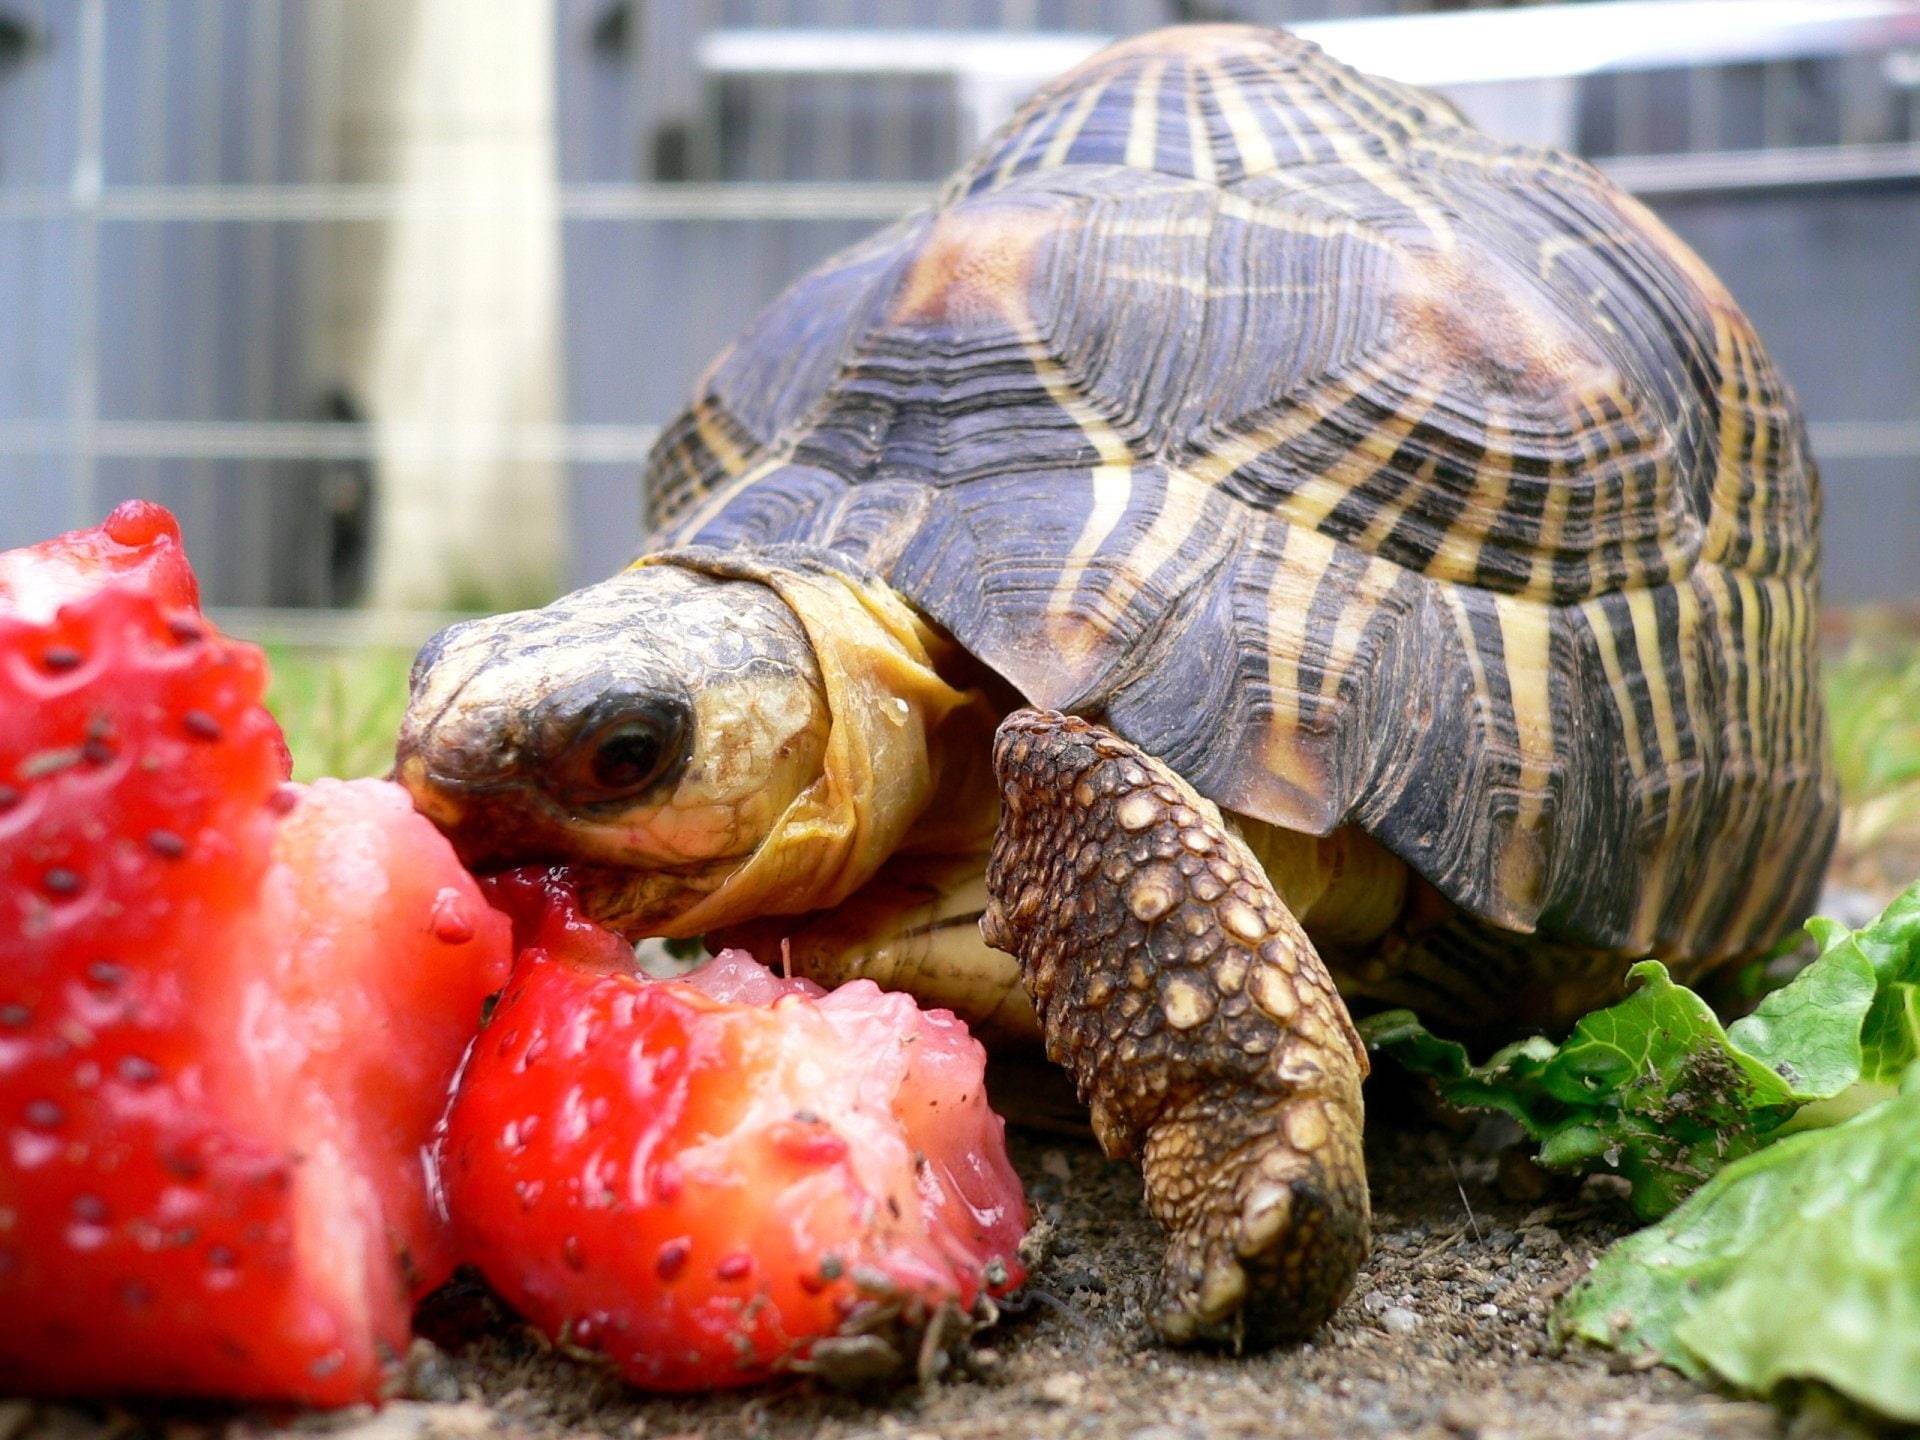 Чем кормить черепаху – правильный рацион, советы